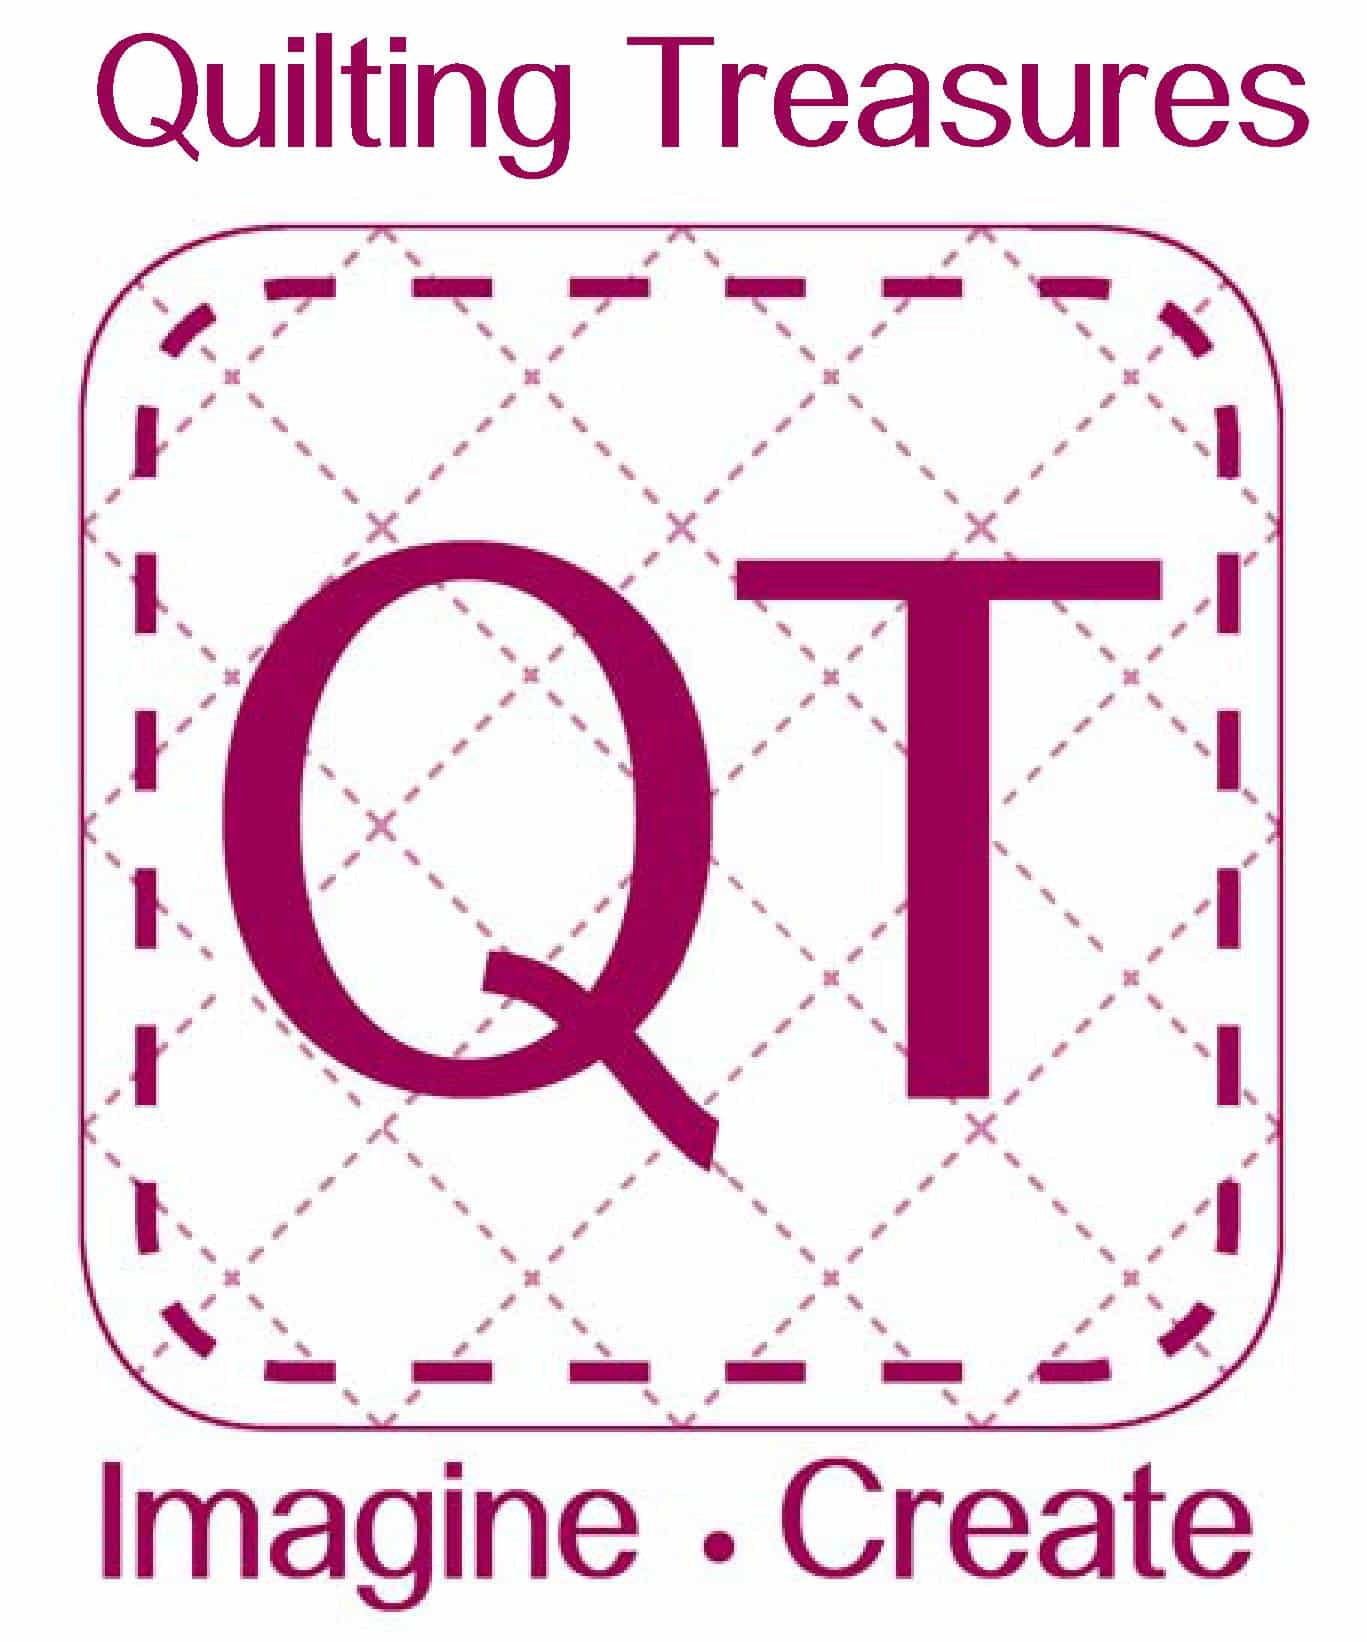 Quilt Logo - quilting treasures logo 1 Quilt Guild